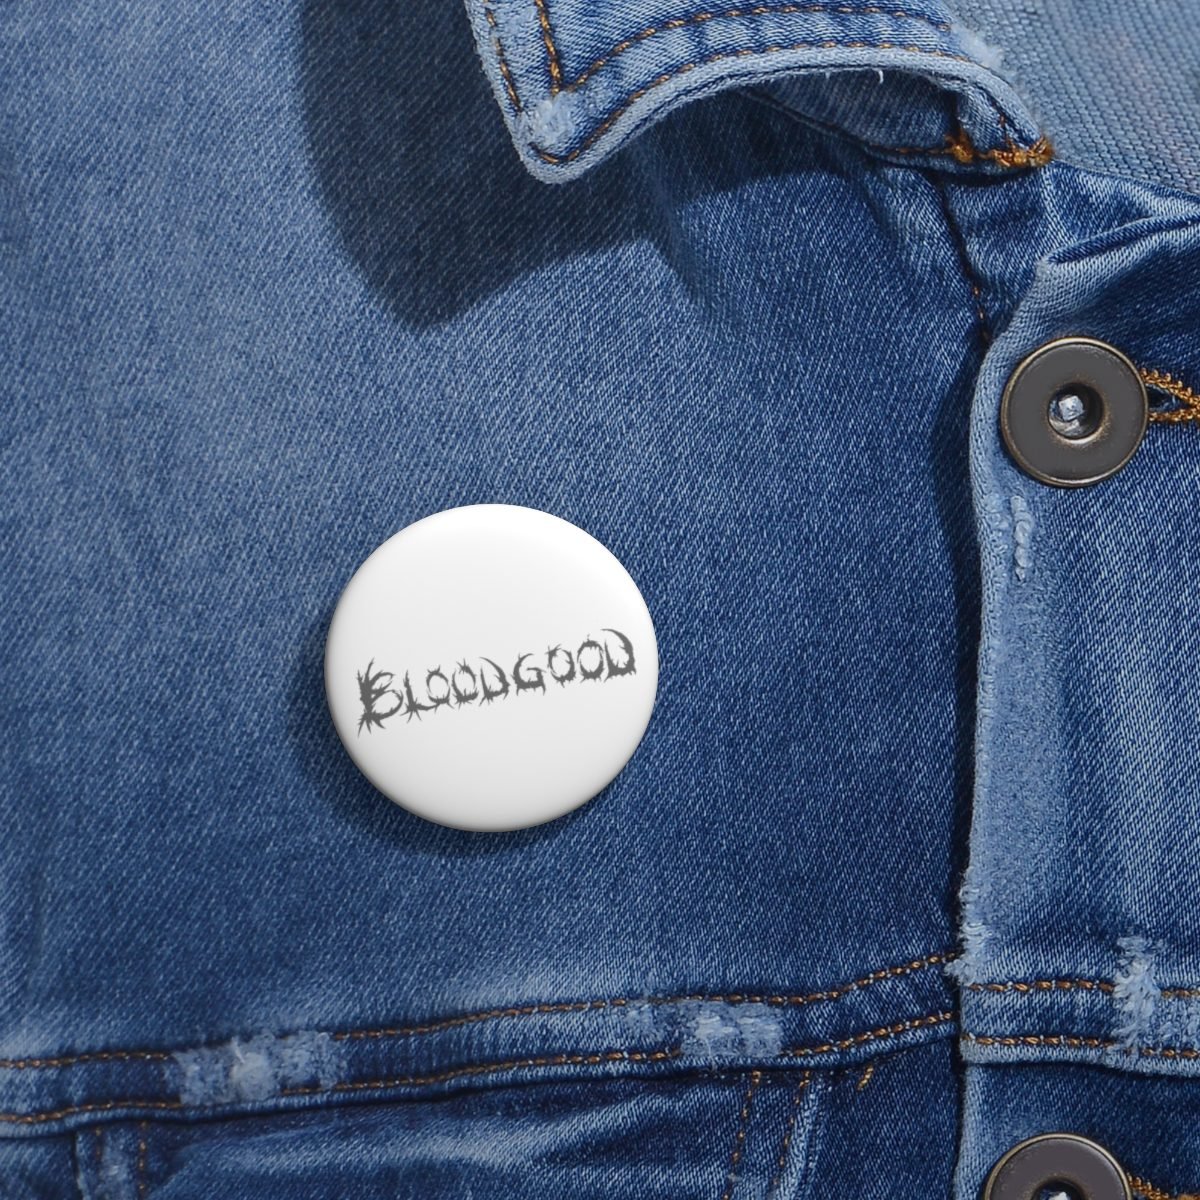 Bloodgood Grey Logo Pin Buttons (White)